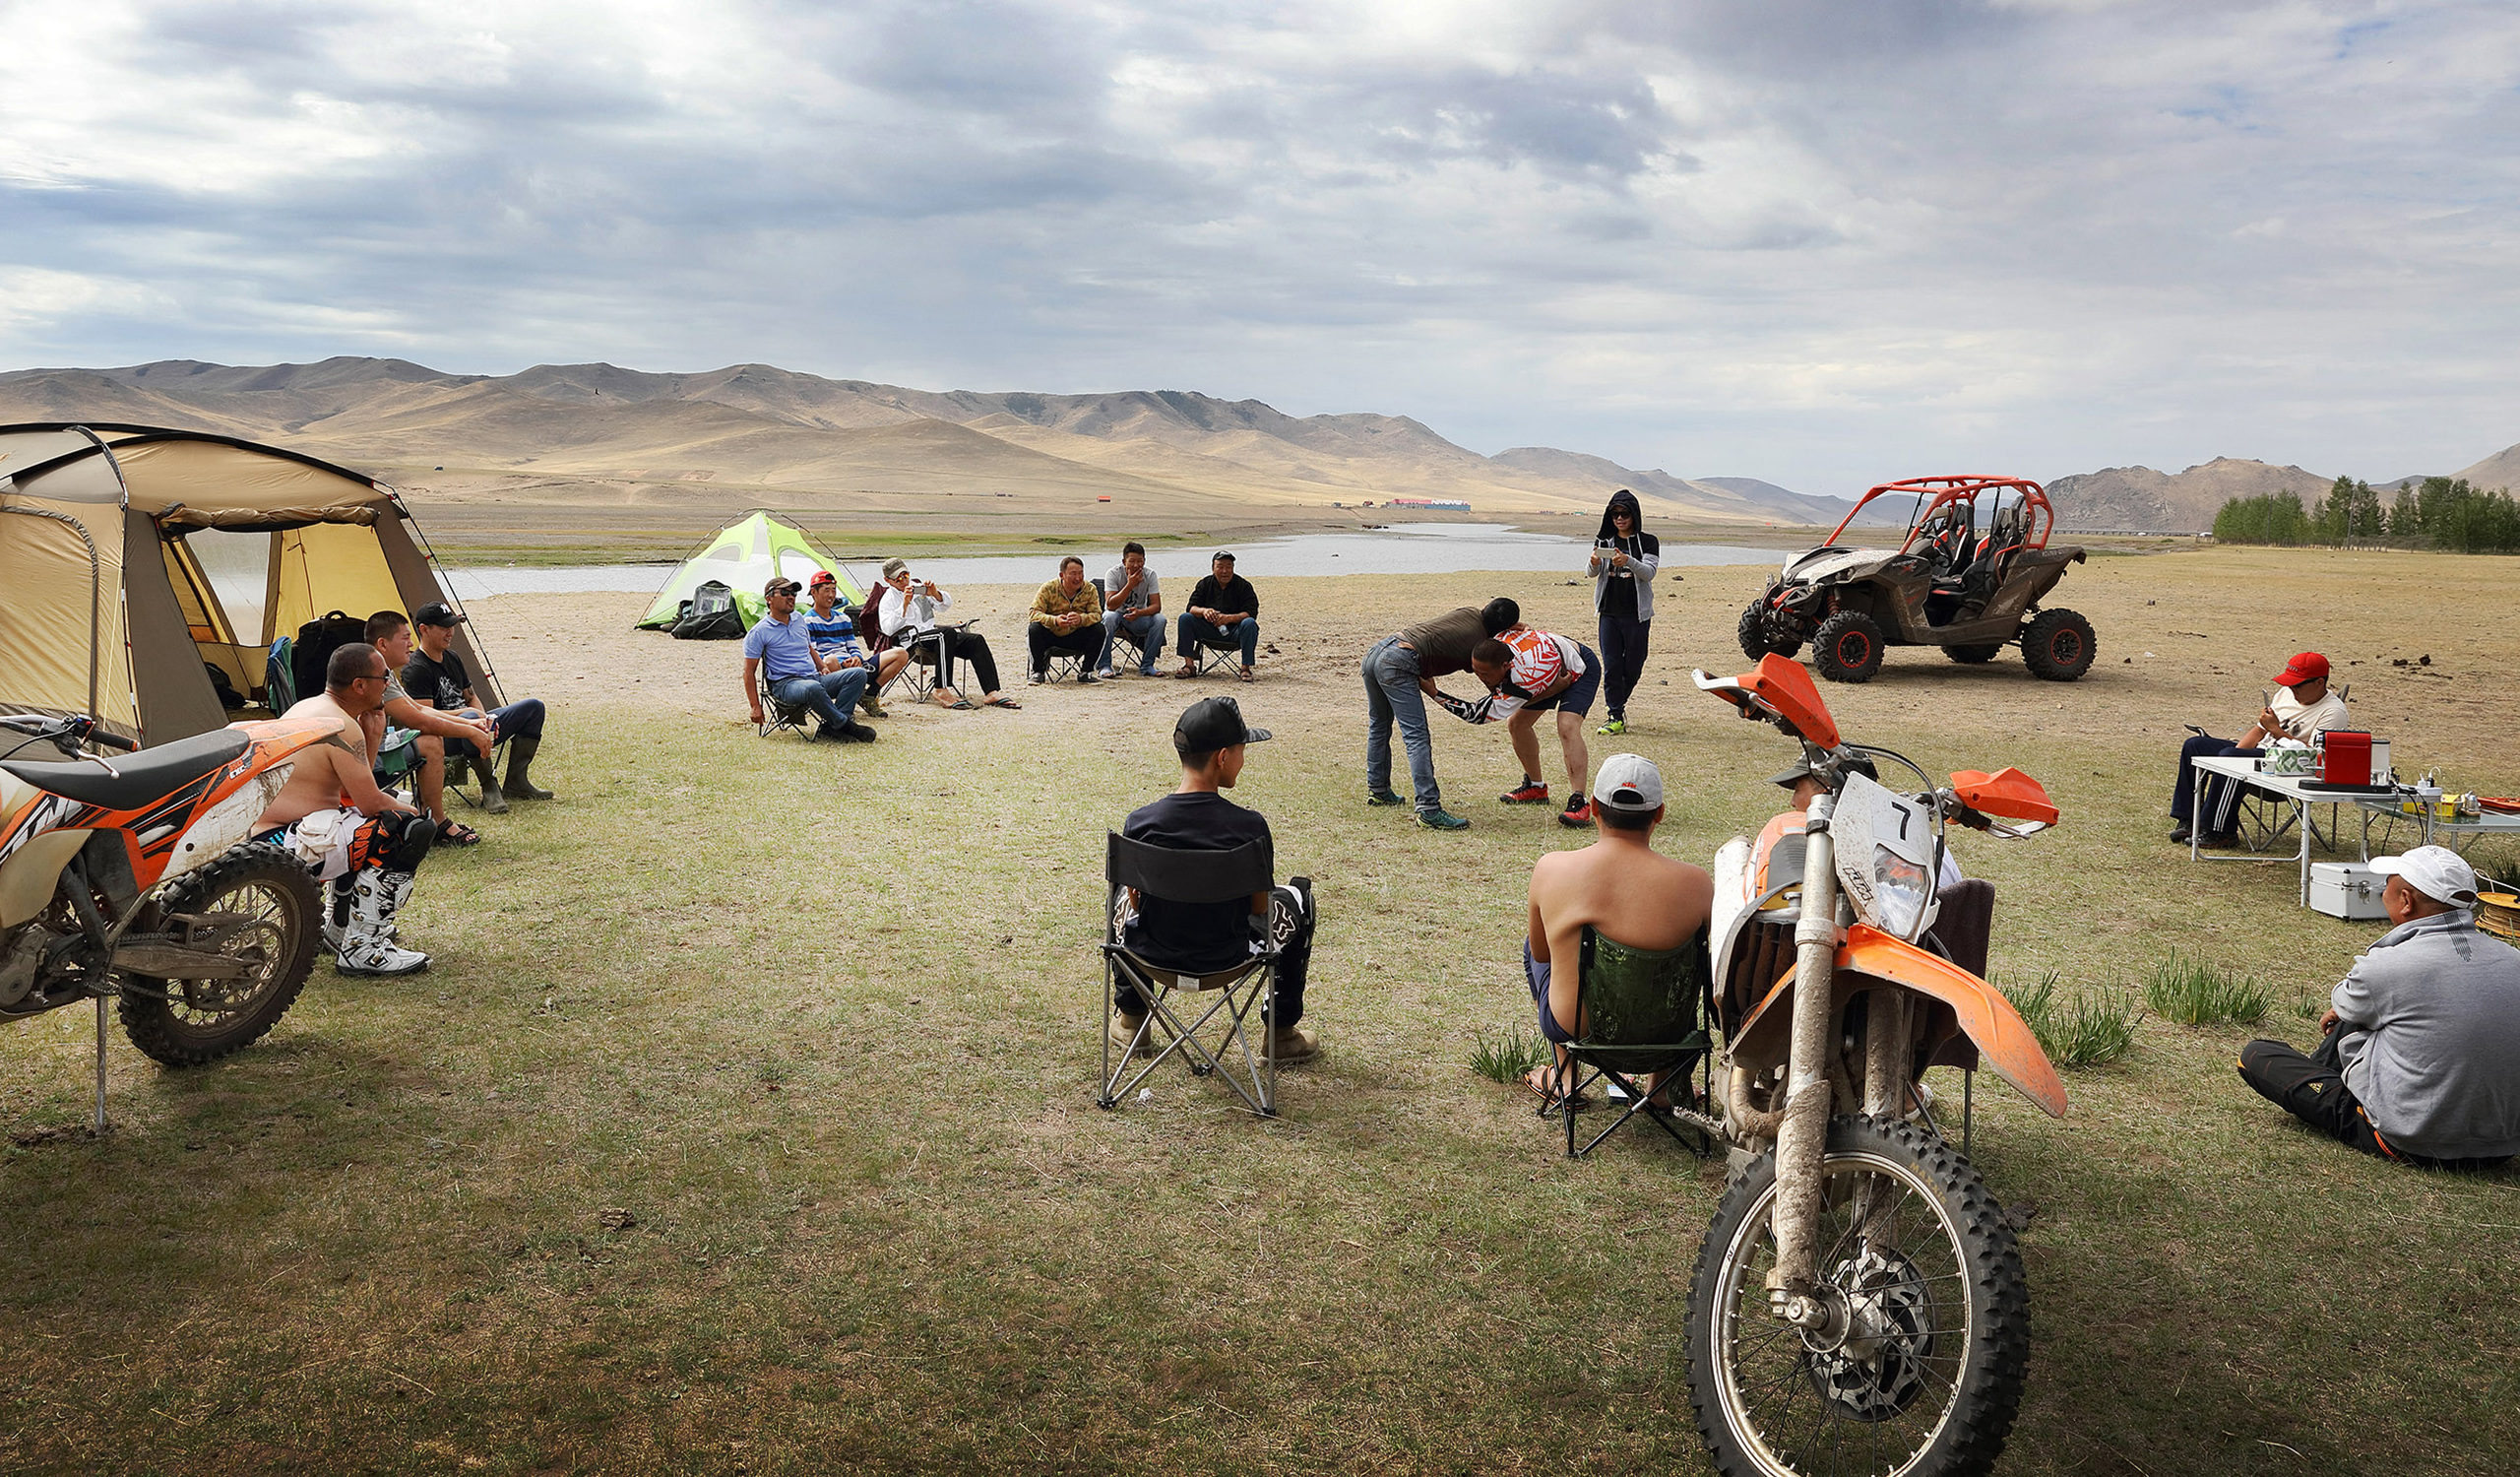 Ringen ist der Nationalsport der Mongolei. Eine lokale Mannschaft schaut zu, während ein paar Freunde sie unterhalten.